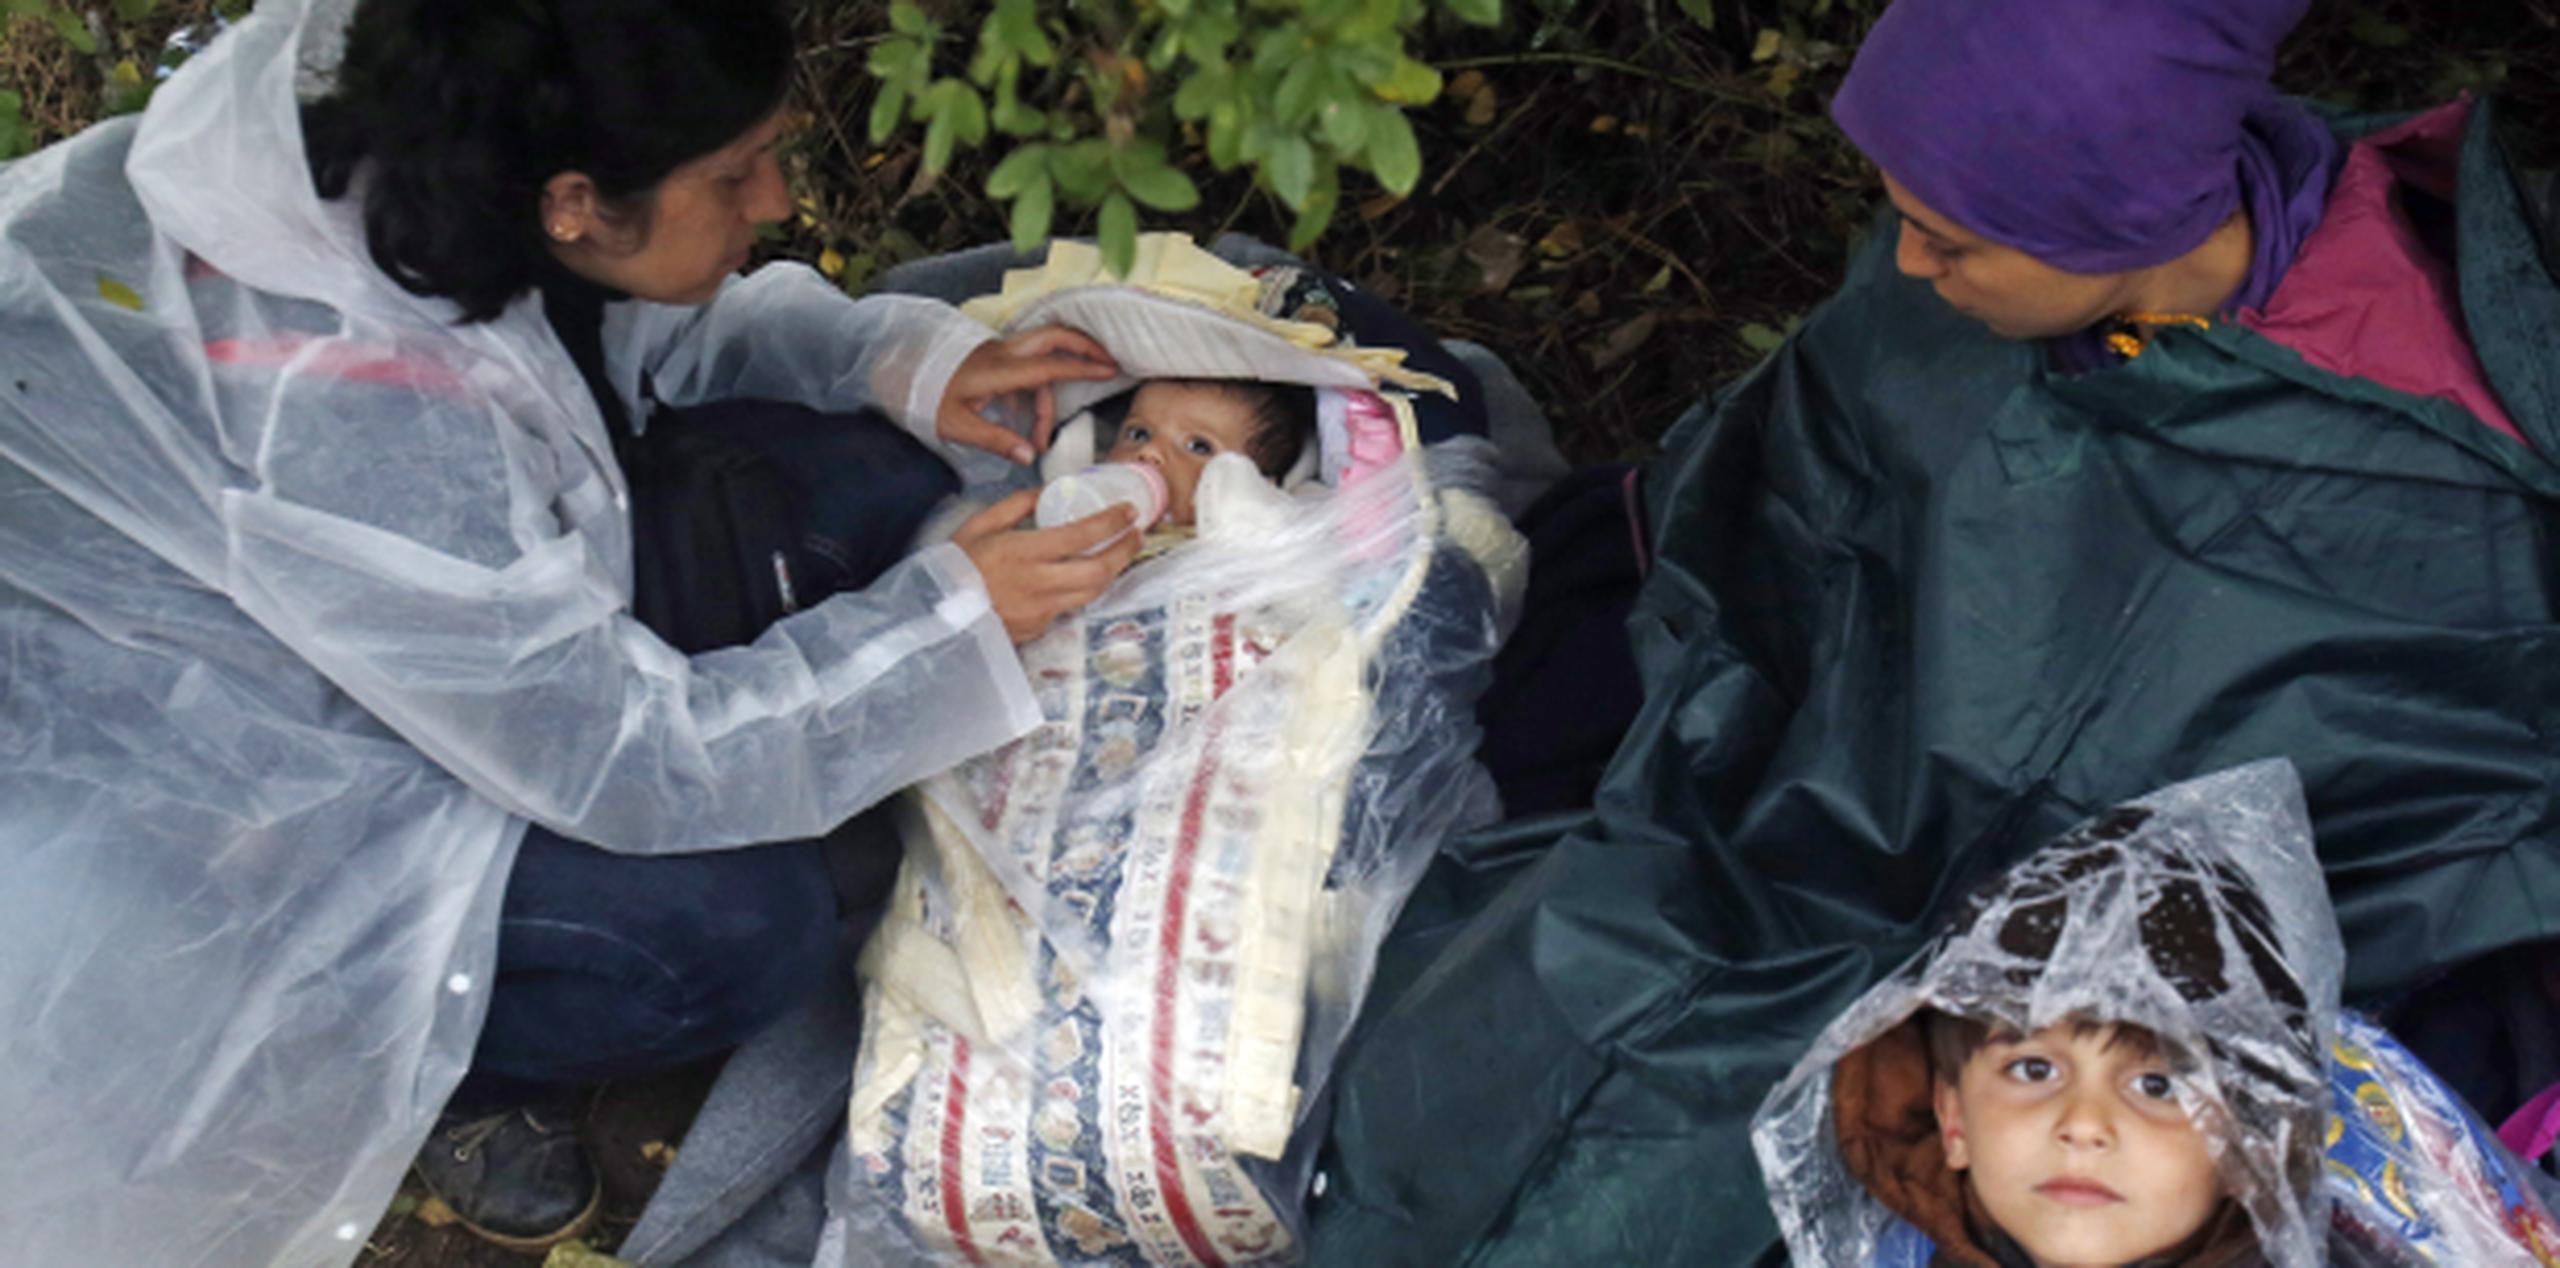 Usando capas para la lluvia, una mujer alimenta a un bebé mintras una niña inmigrante mira fijamente. (AP)